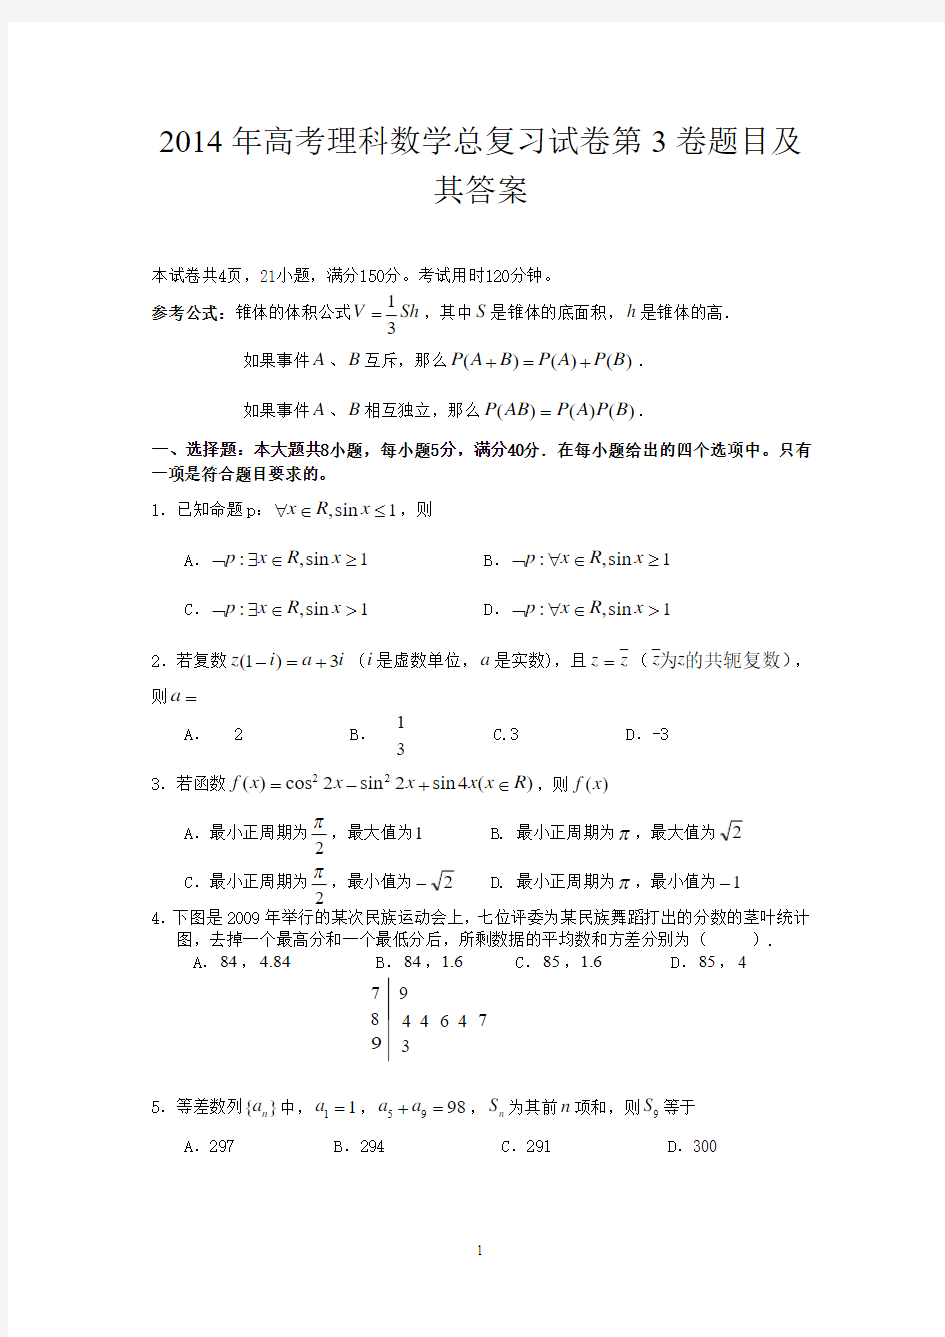 2014年高考理科数学总复习试卷第3卷题目及其答案